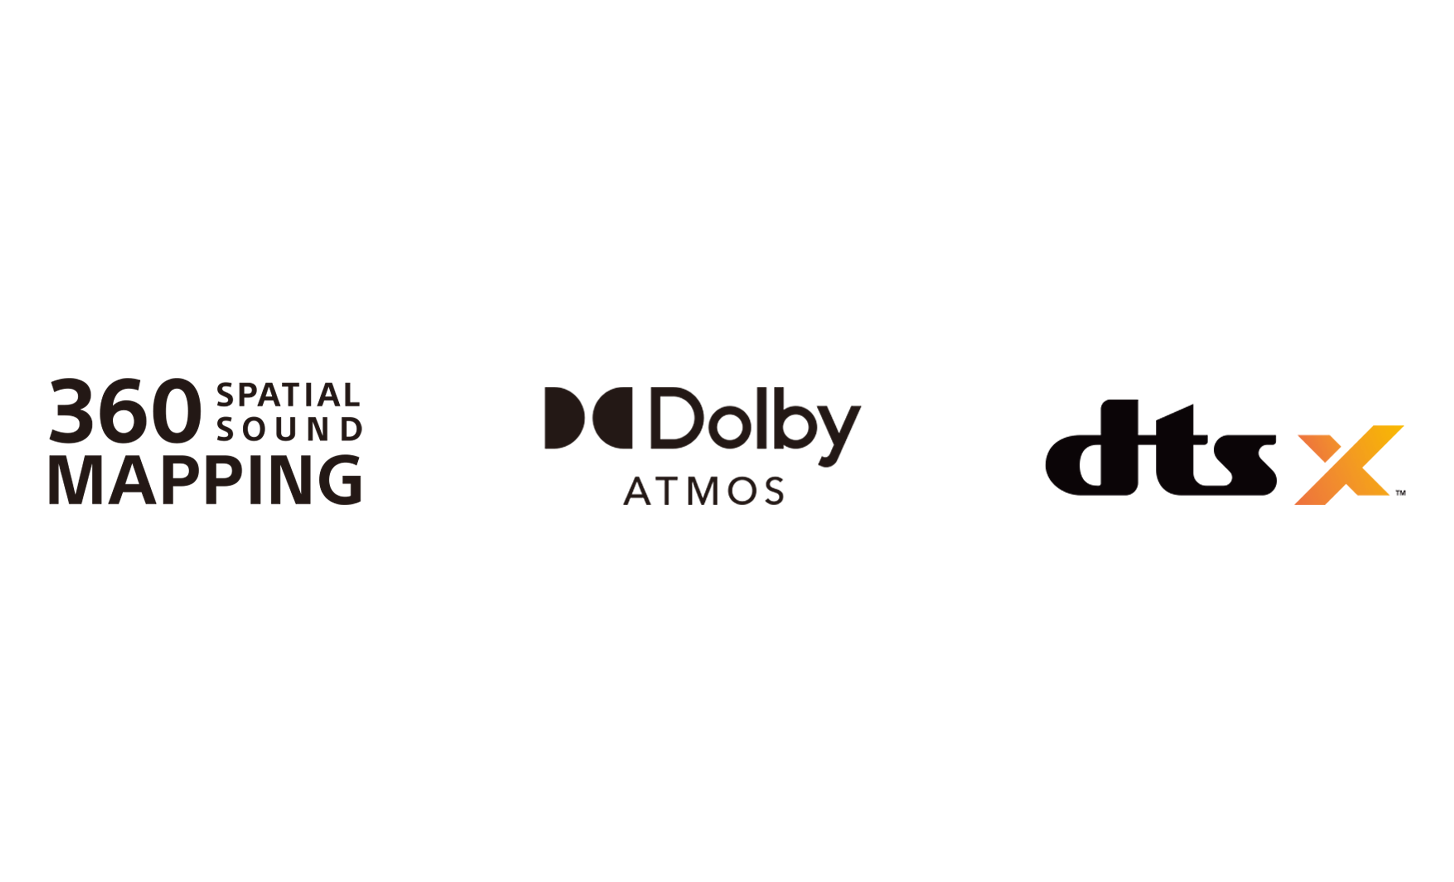 Λογότυπο 360 Spatial Sound Mapping, λογότυπο Dolby Atmos, λογότυπο dtsX